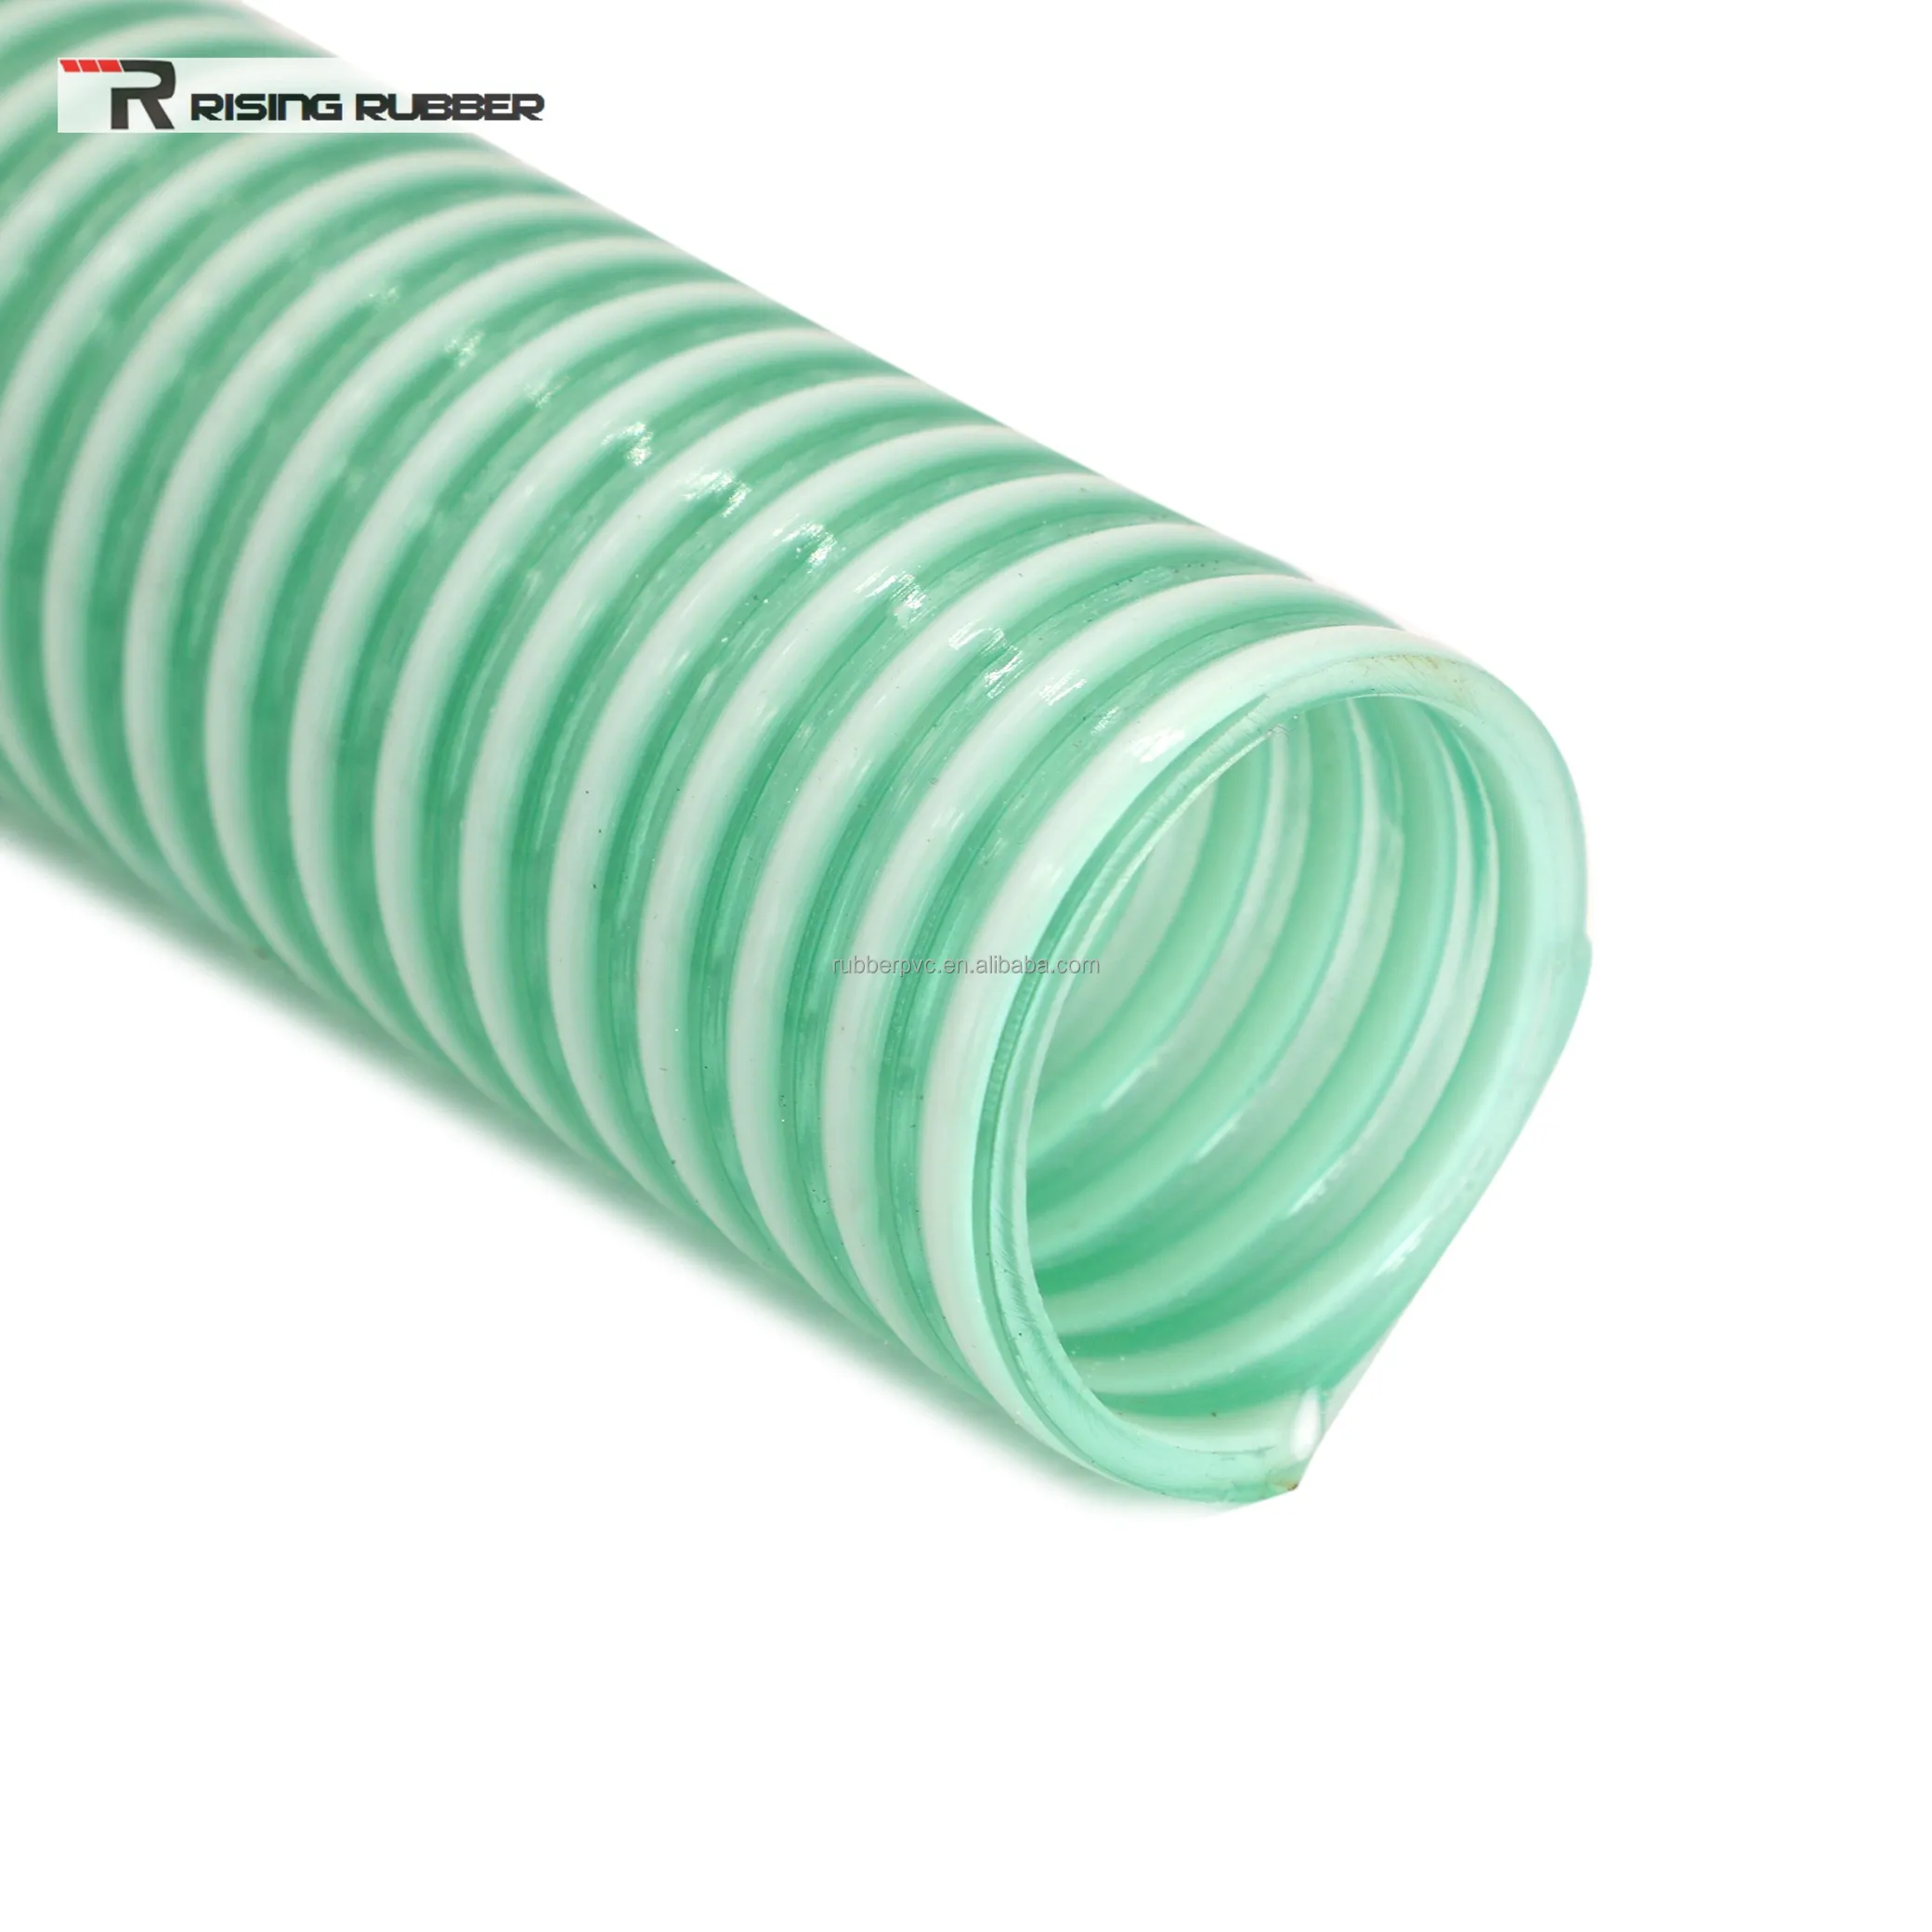 الصين الصانع مرنة البلاستيك PVC الثقيلة دوامة المموج خرطوم شفط 3 4 5 6 8 10 بوصة المياه خرطوم الشفط من المضخة خرطوم شفط الأنابيب